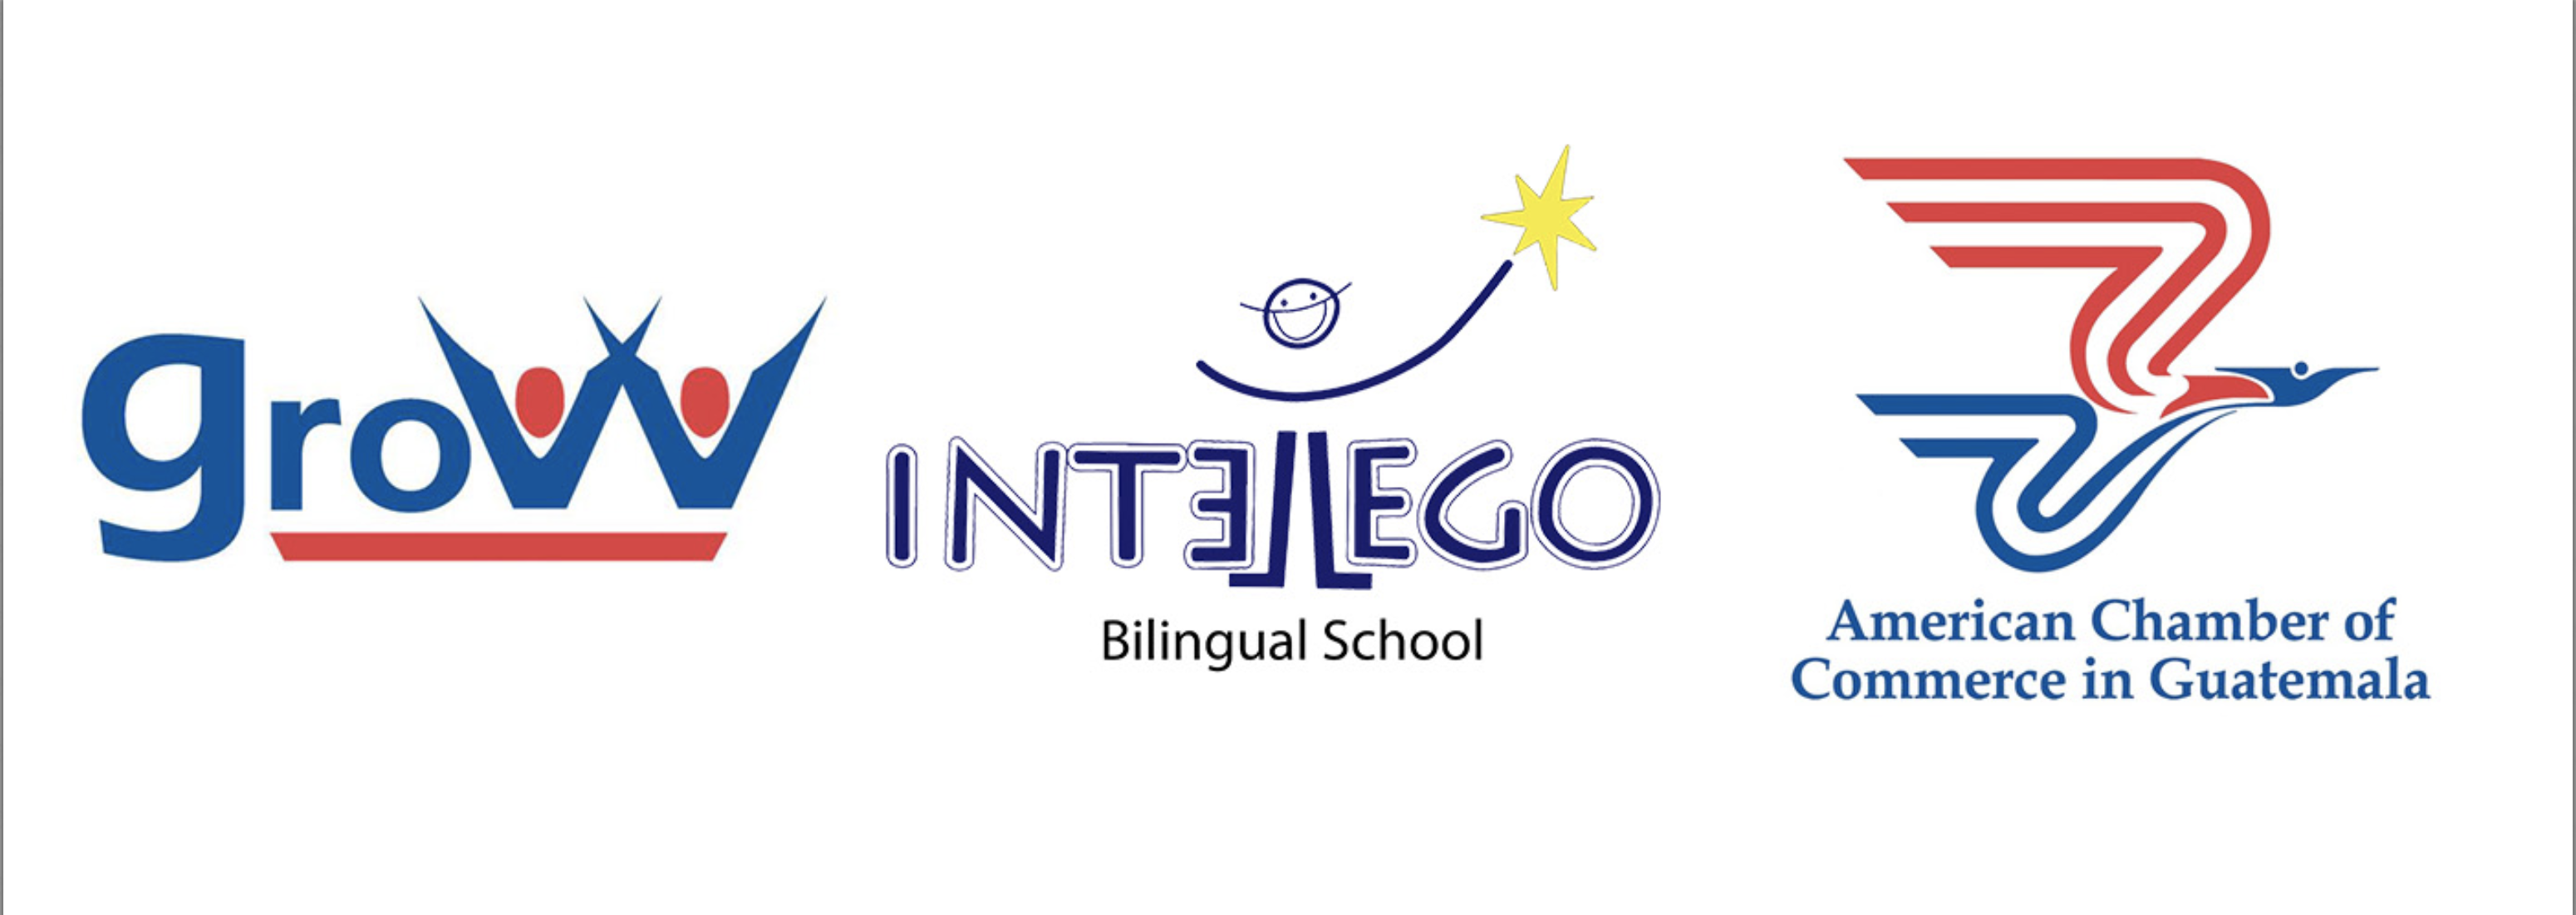 educacion bilingue con estandares mundiales